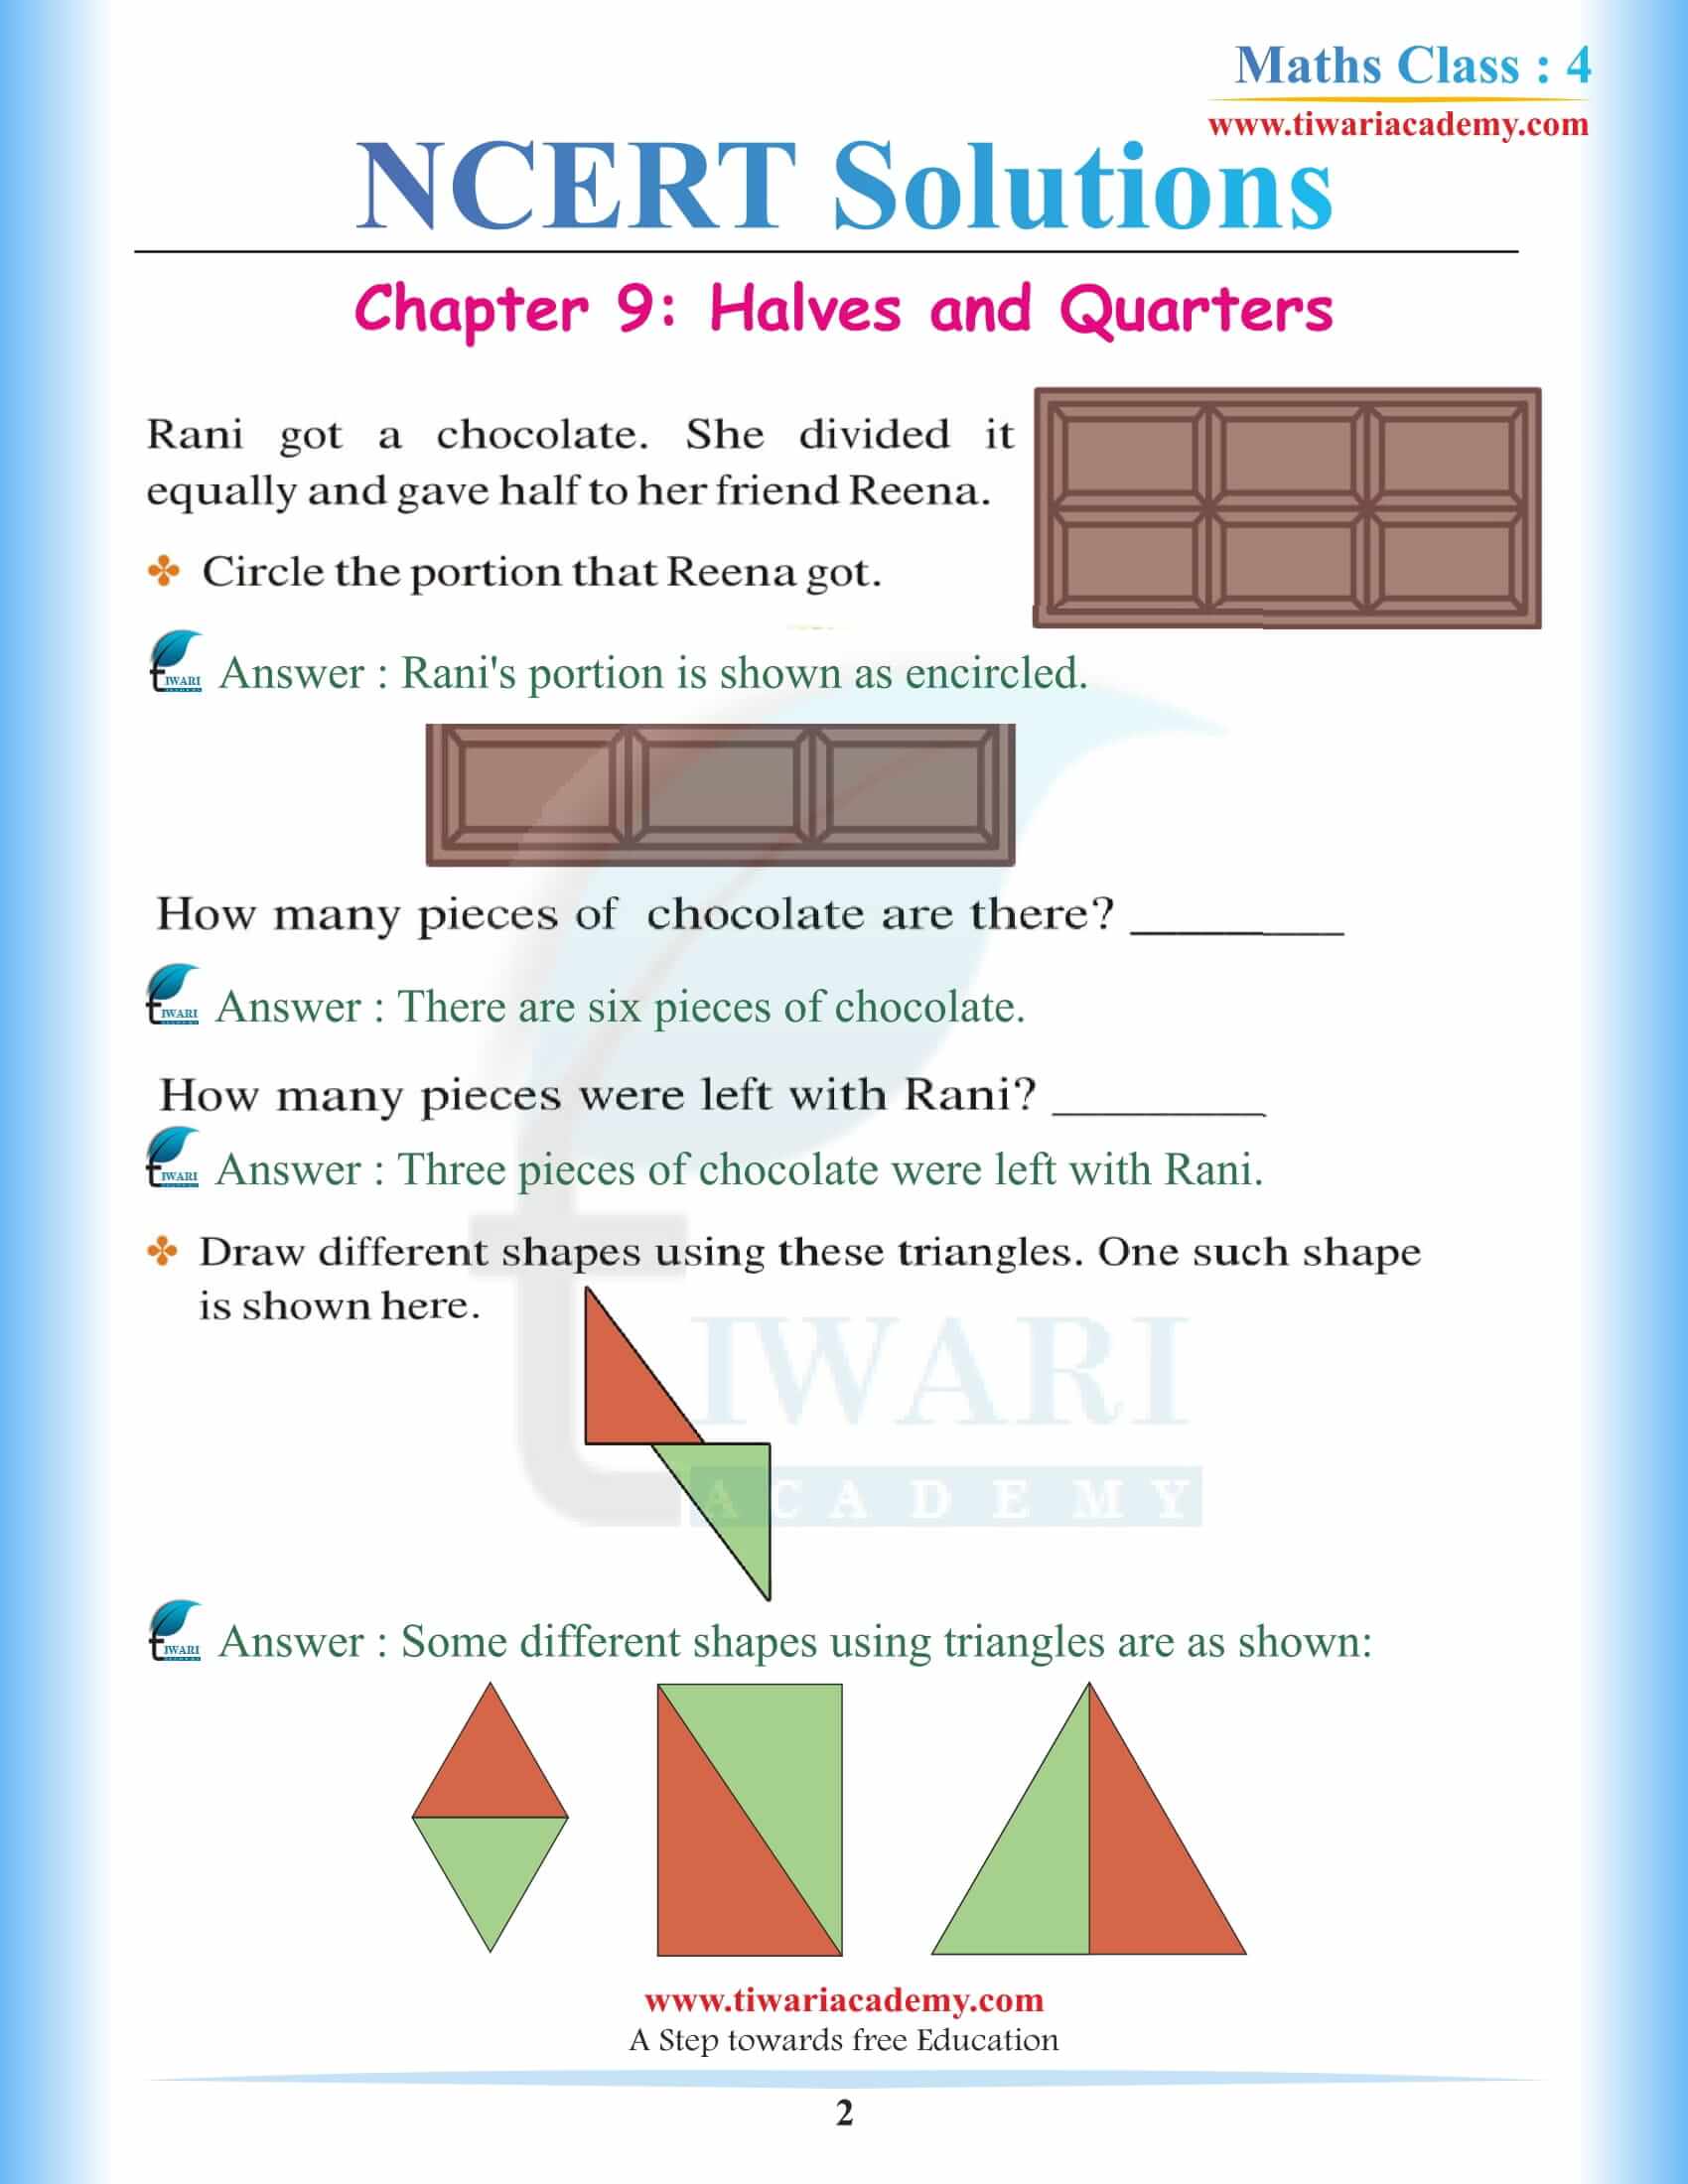 NCERT Solutions for Class 4 Maths Chapter 9